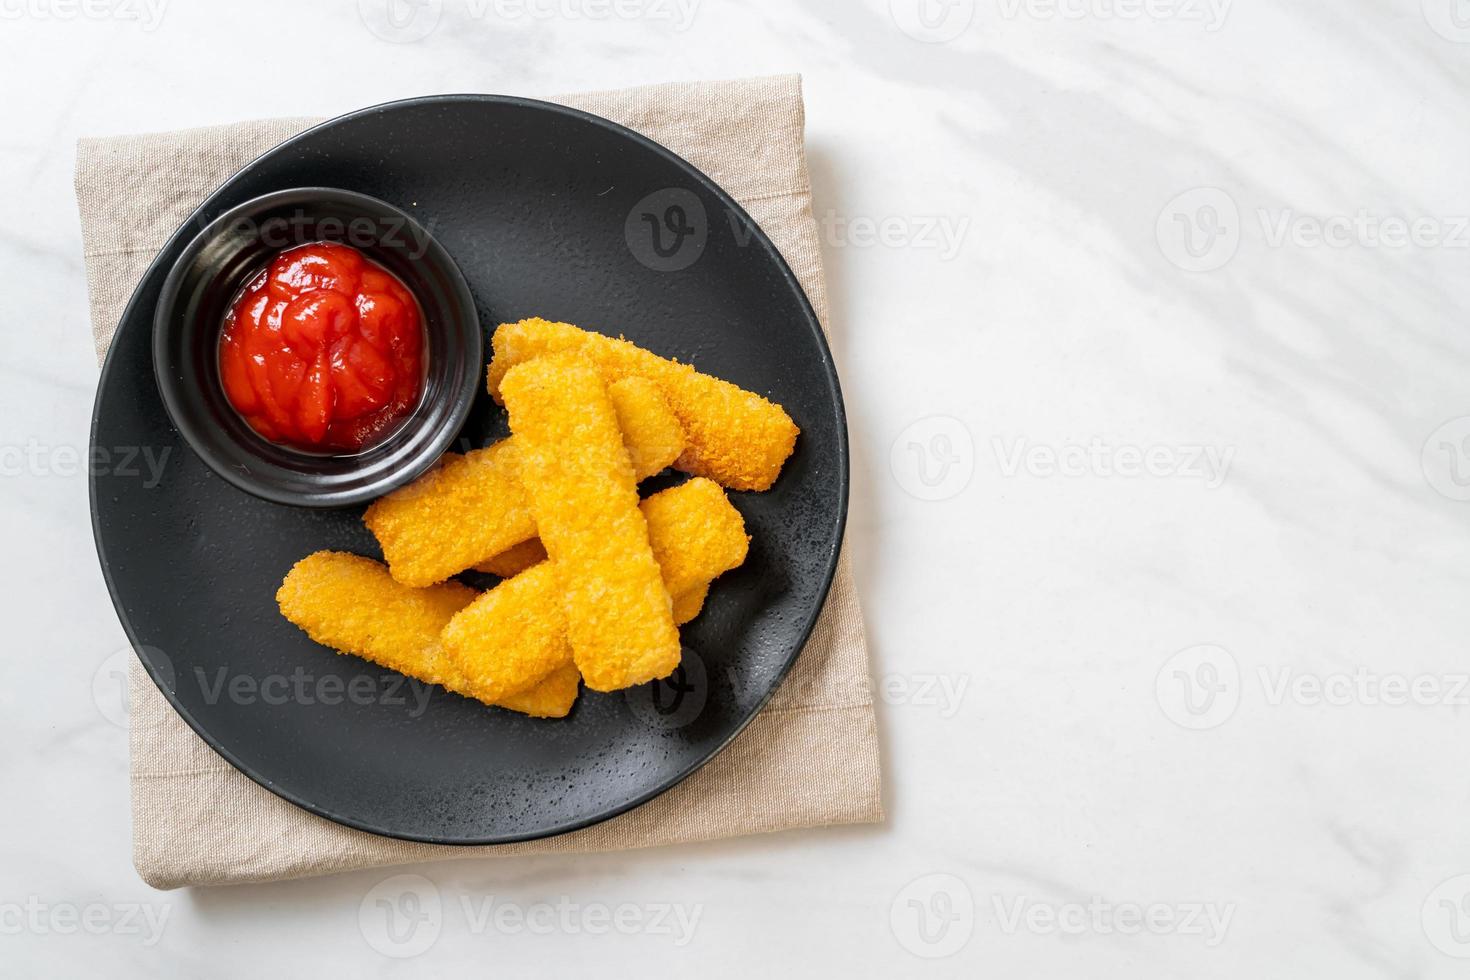 crocantes de peixe frito com migalhas de pão servidos no prato com ketchup foto